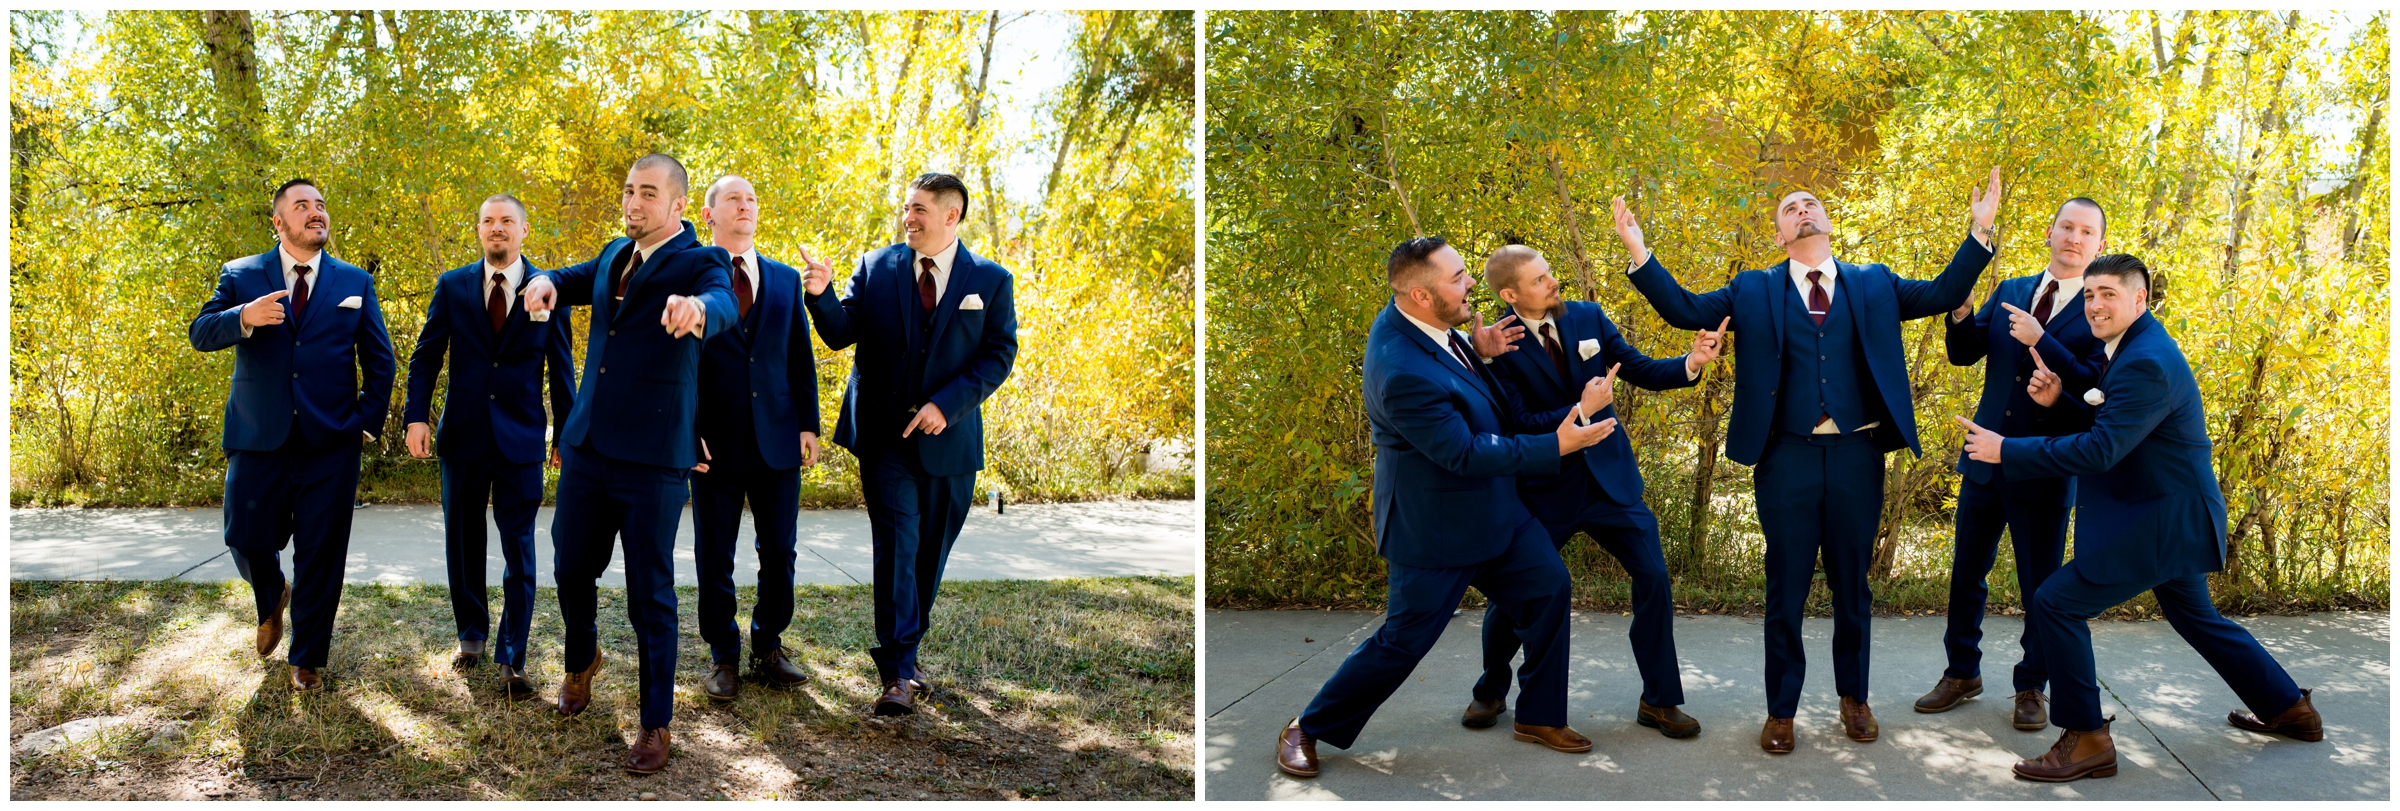 funny groomsmen photos at Colorado fall mountain wedding 